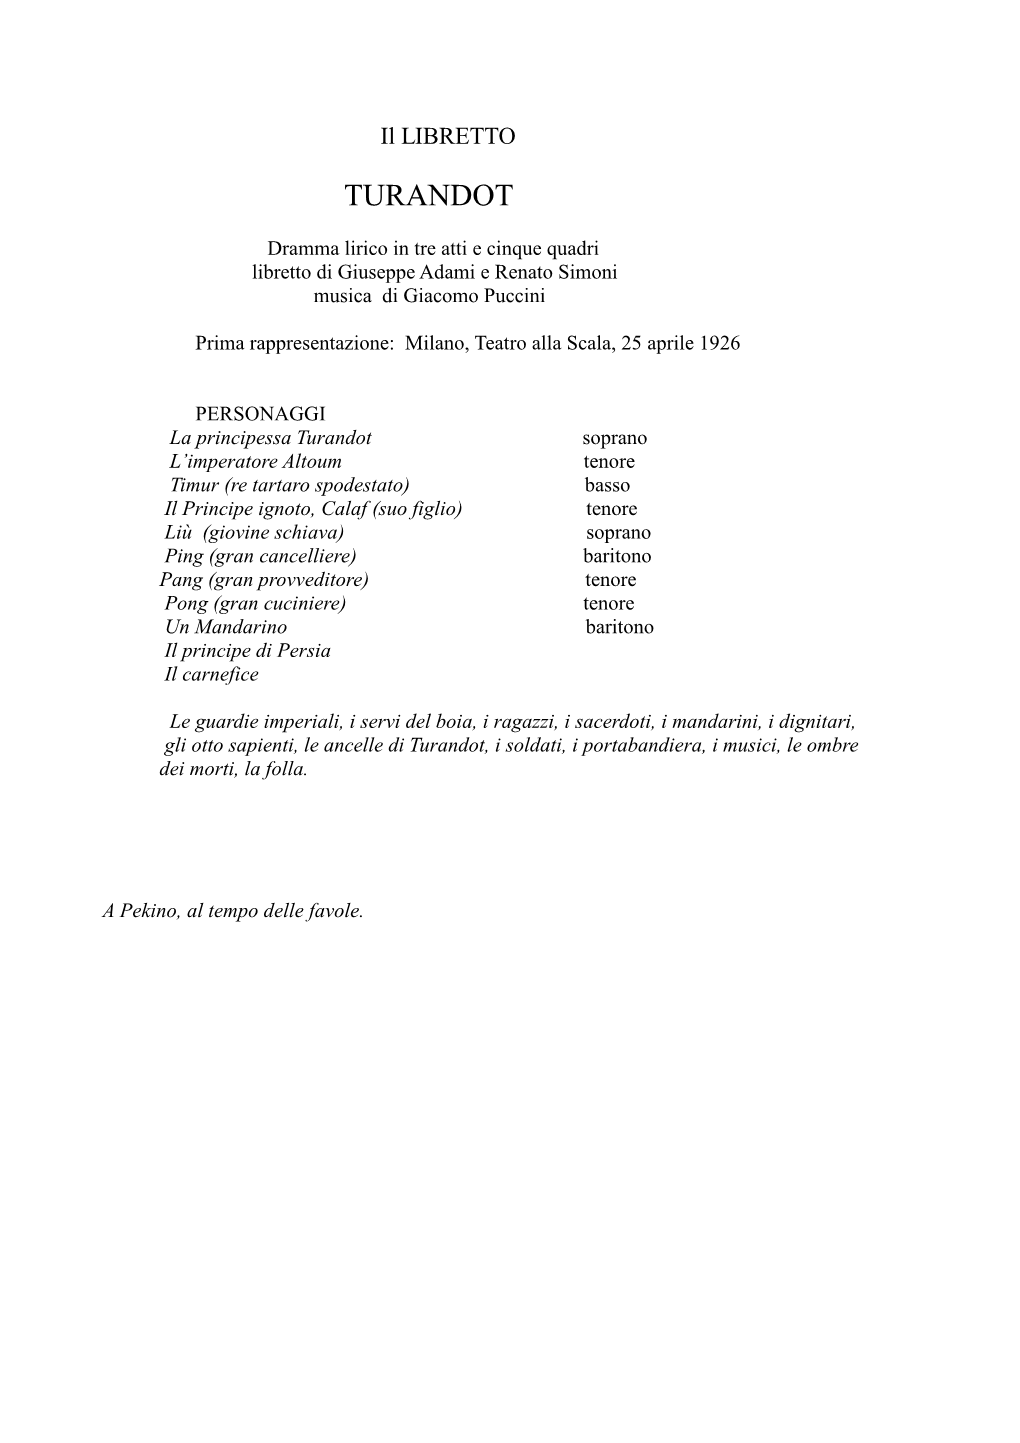 Libretto Turandot , Edizione Ricordi & C Spa 1926, Pubblicato in Tutti I Libretti Di Puccini, a Cura Di Enrico Maria Ferrando, Utet, Torino, 1996